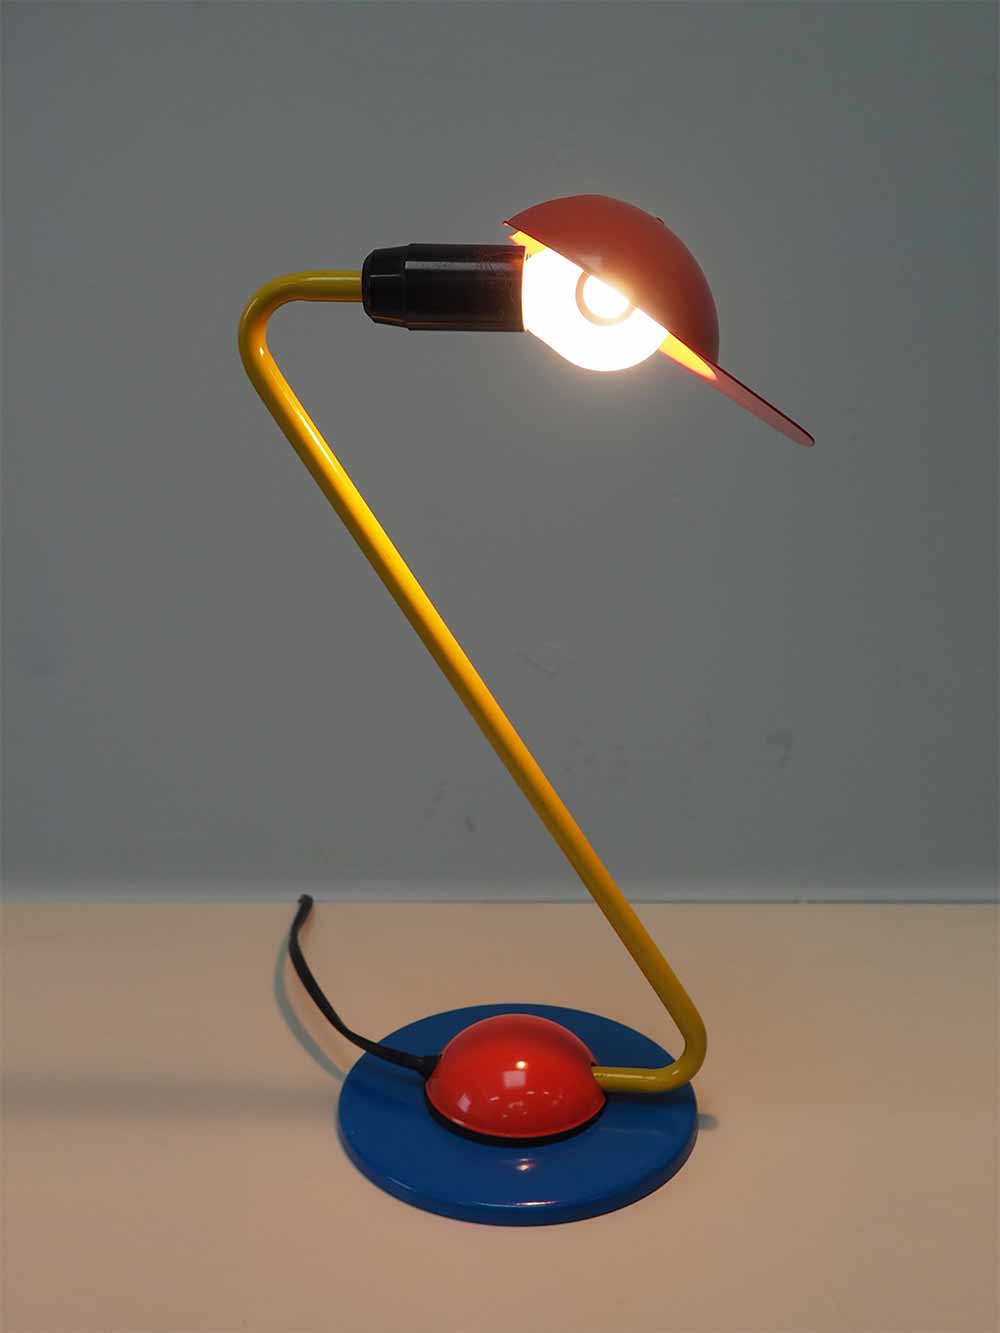 Tafellamp met pet memphis stijl rood geel blauw